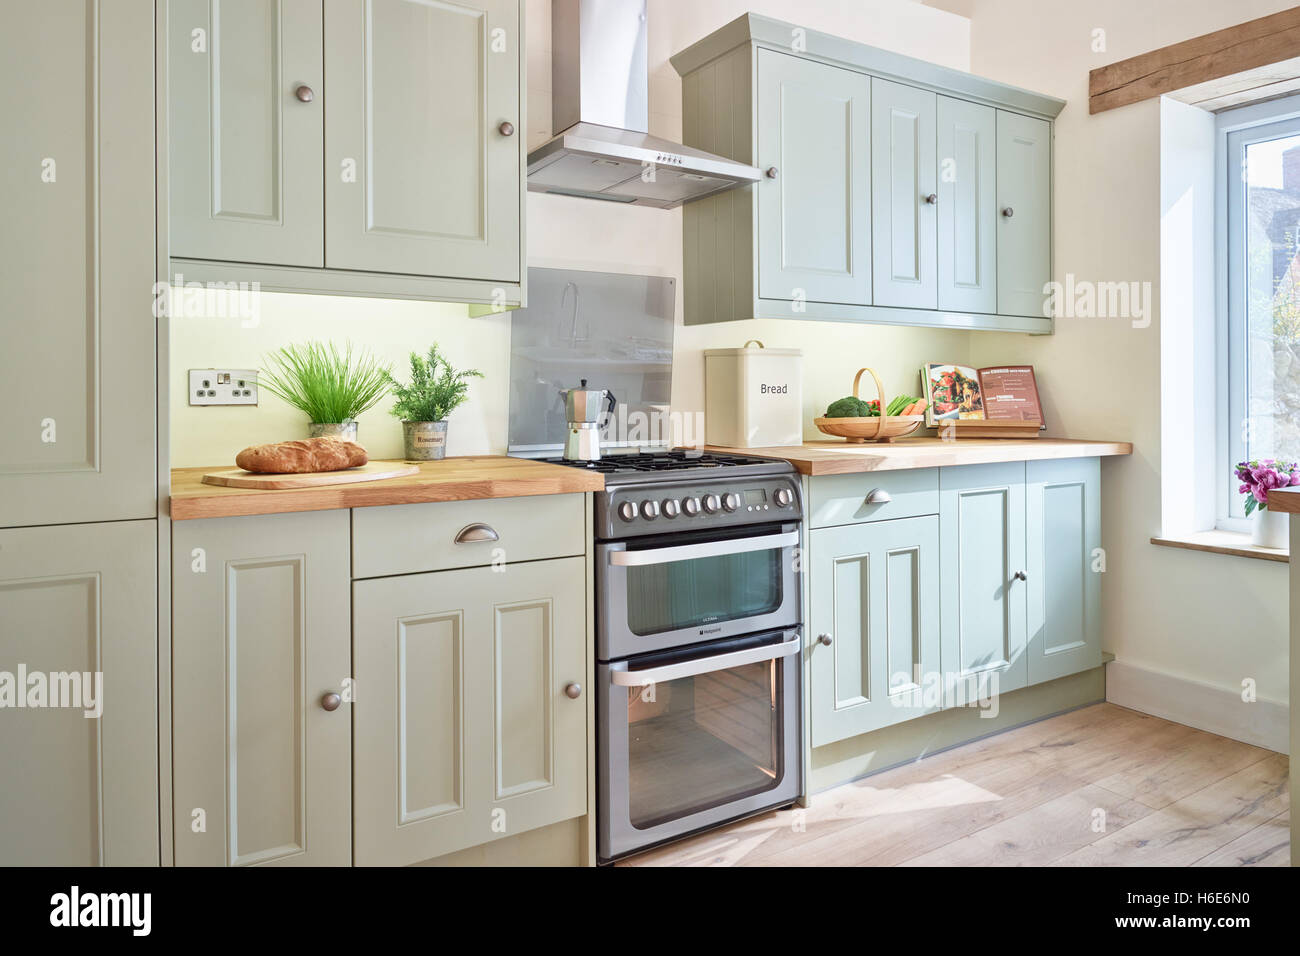 Eine moderne, frische offene Küche mit integriertem Backofen, Arbeitsplatten Herd, Dunstabzugshaube & Holz. Oxfordshire, Vereinigtes Königreich Stockfoto